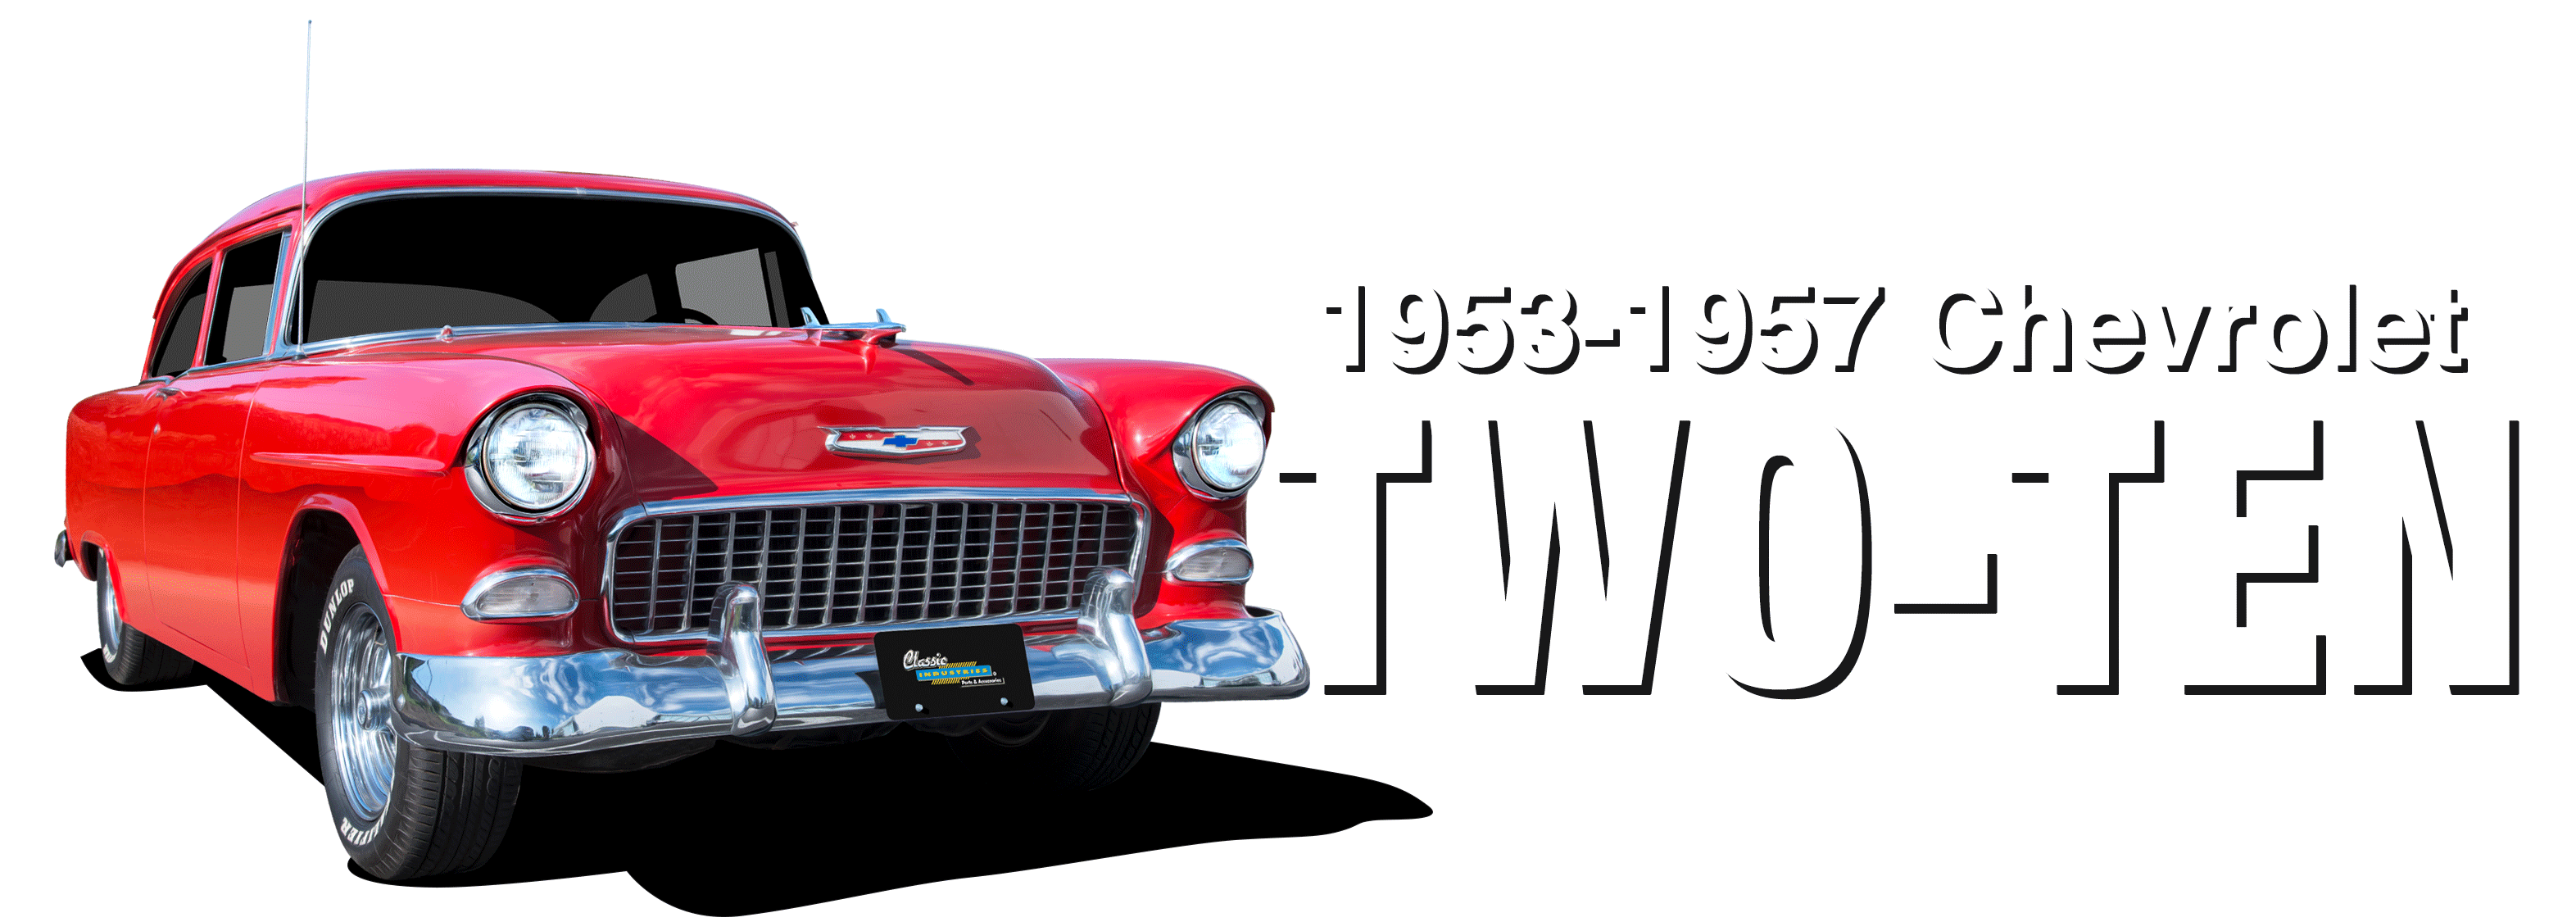 1953-1957 Chevrolet Two-Ten